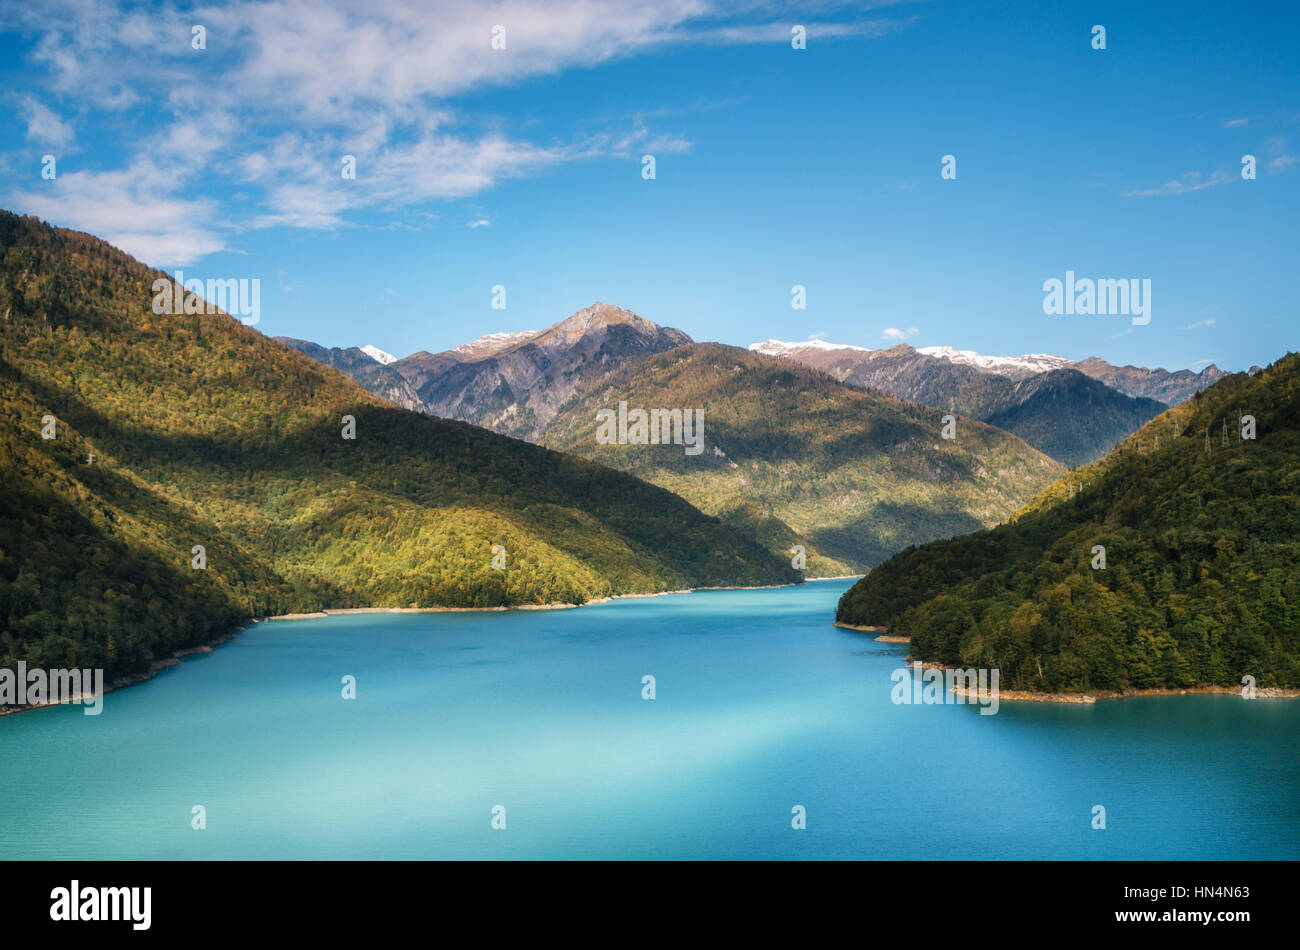 Serbatoio di Jvari Enguri fiume con una vibrante acque blu turchese tra le montagne, Svaneti superiore, Georgia. Tranquillo Lago di montagna come un fiordo. Foto Stock